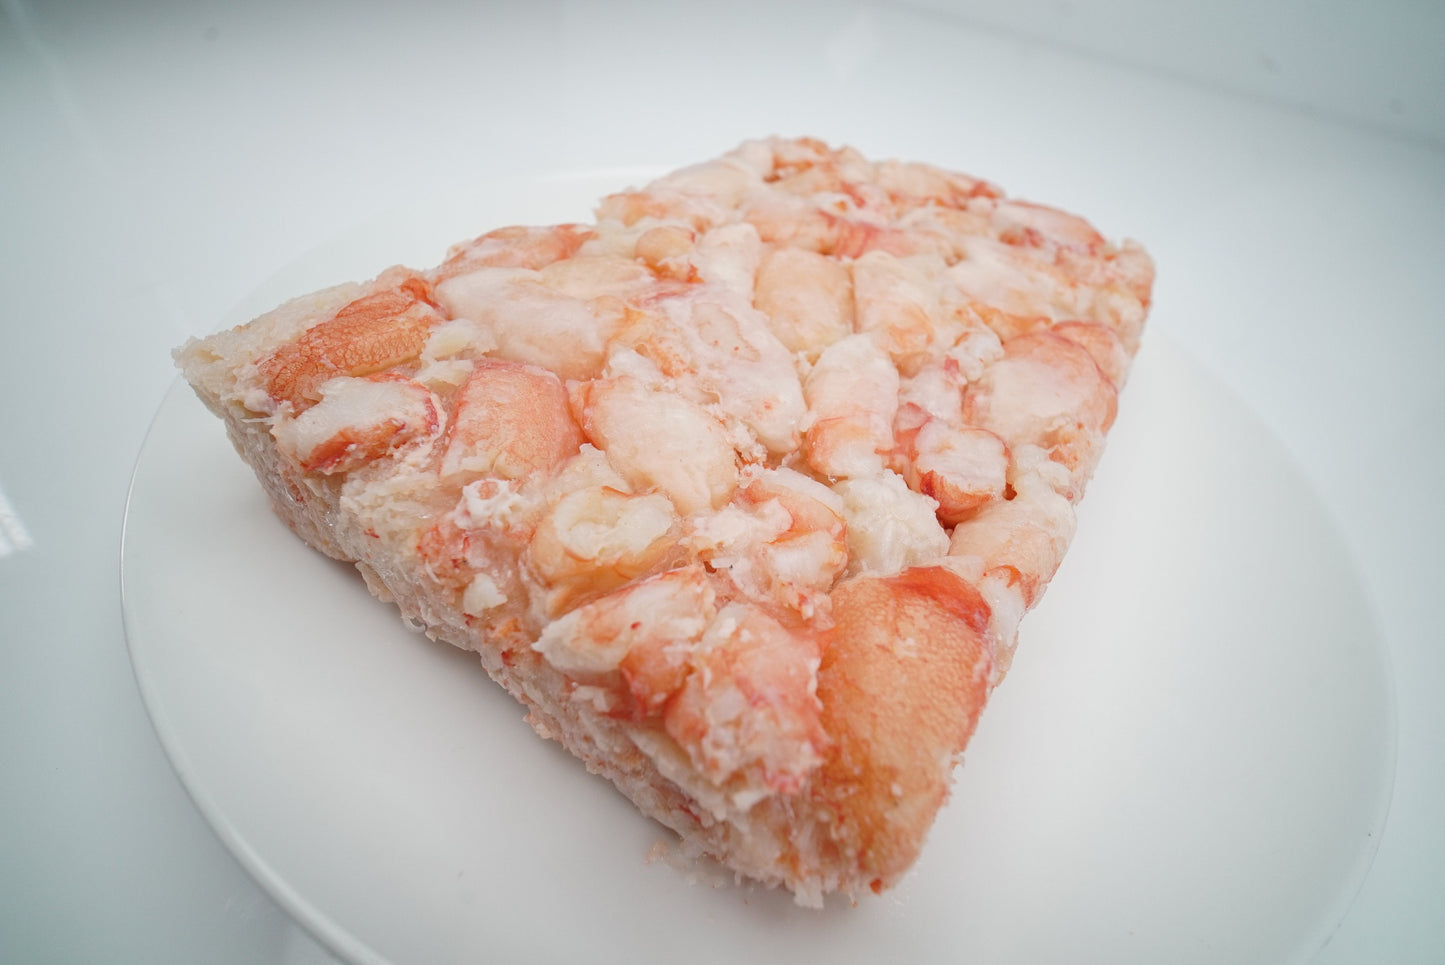 Red Deep Sea Crab Kauai Prawns And Premium Scallops 10 lbs